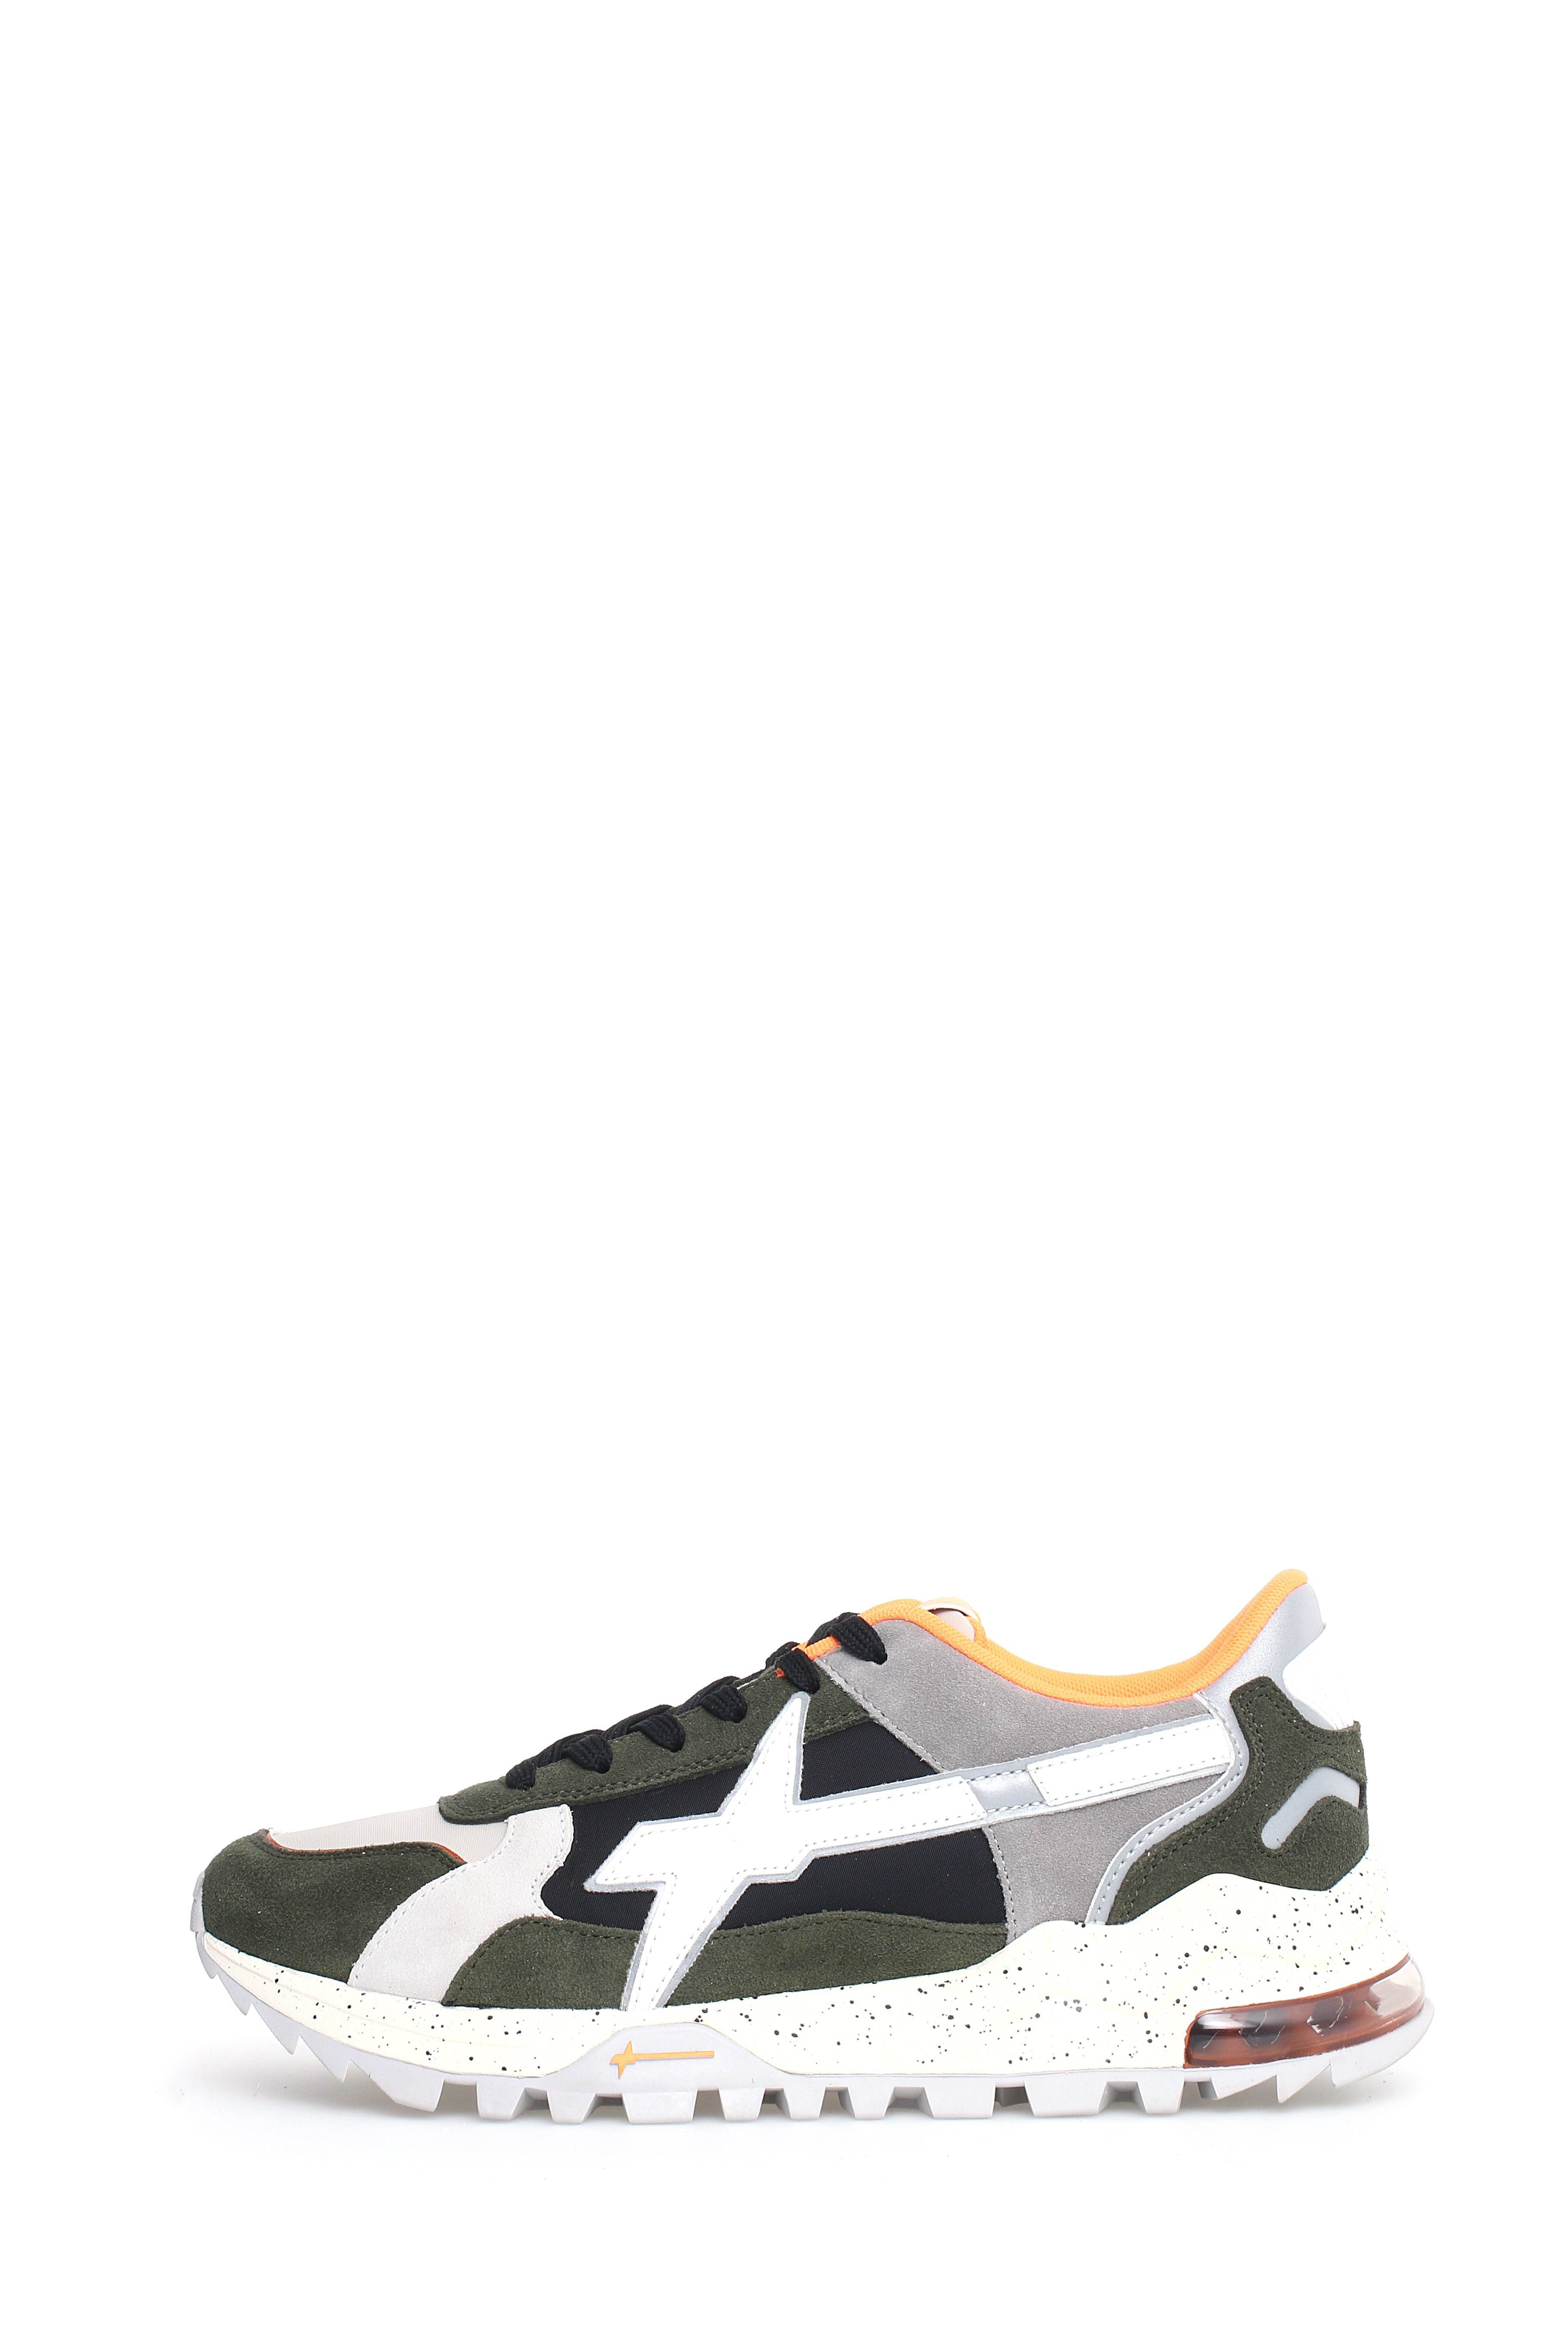 W6YZ-Sneaker Uomo K3 M-Militare Black